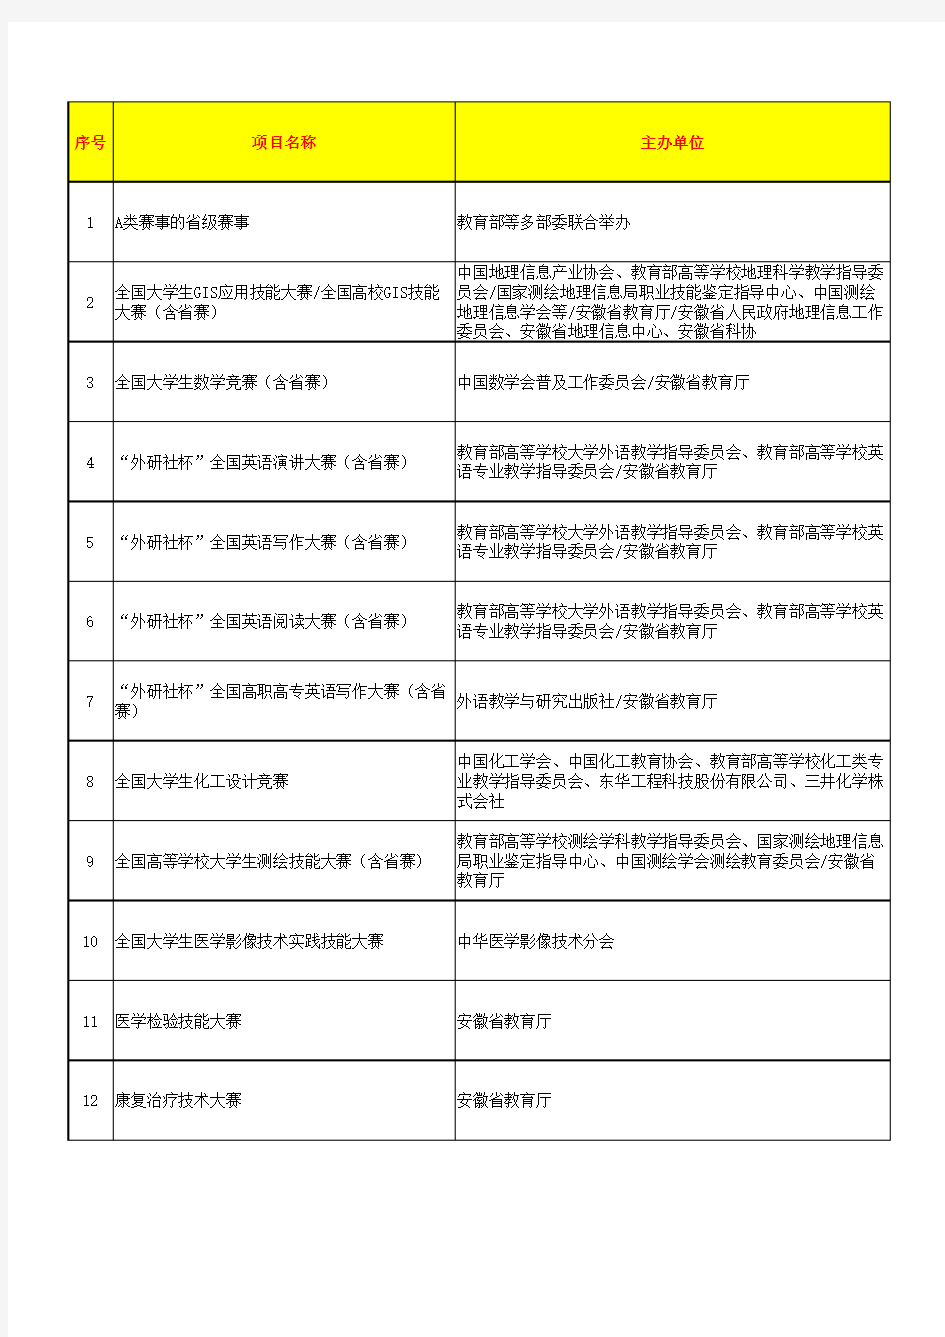 安徽省大学生学科和技能竞赛A、B类项目列表(2019年版)